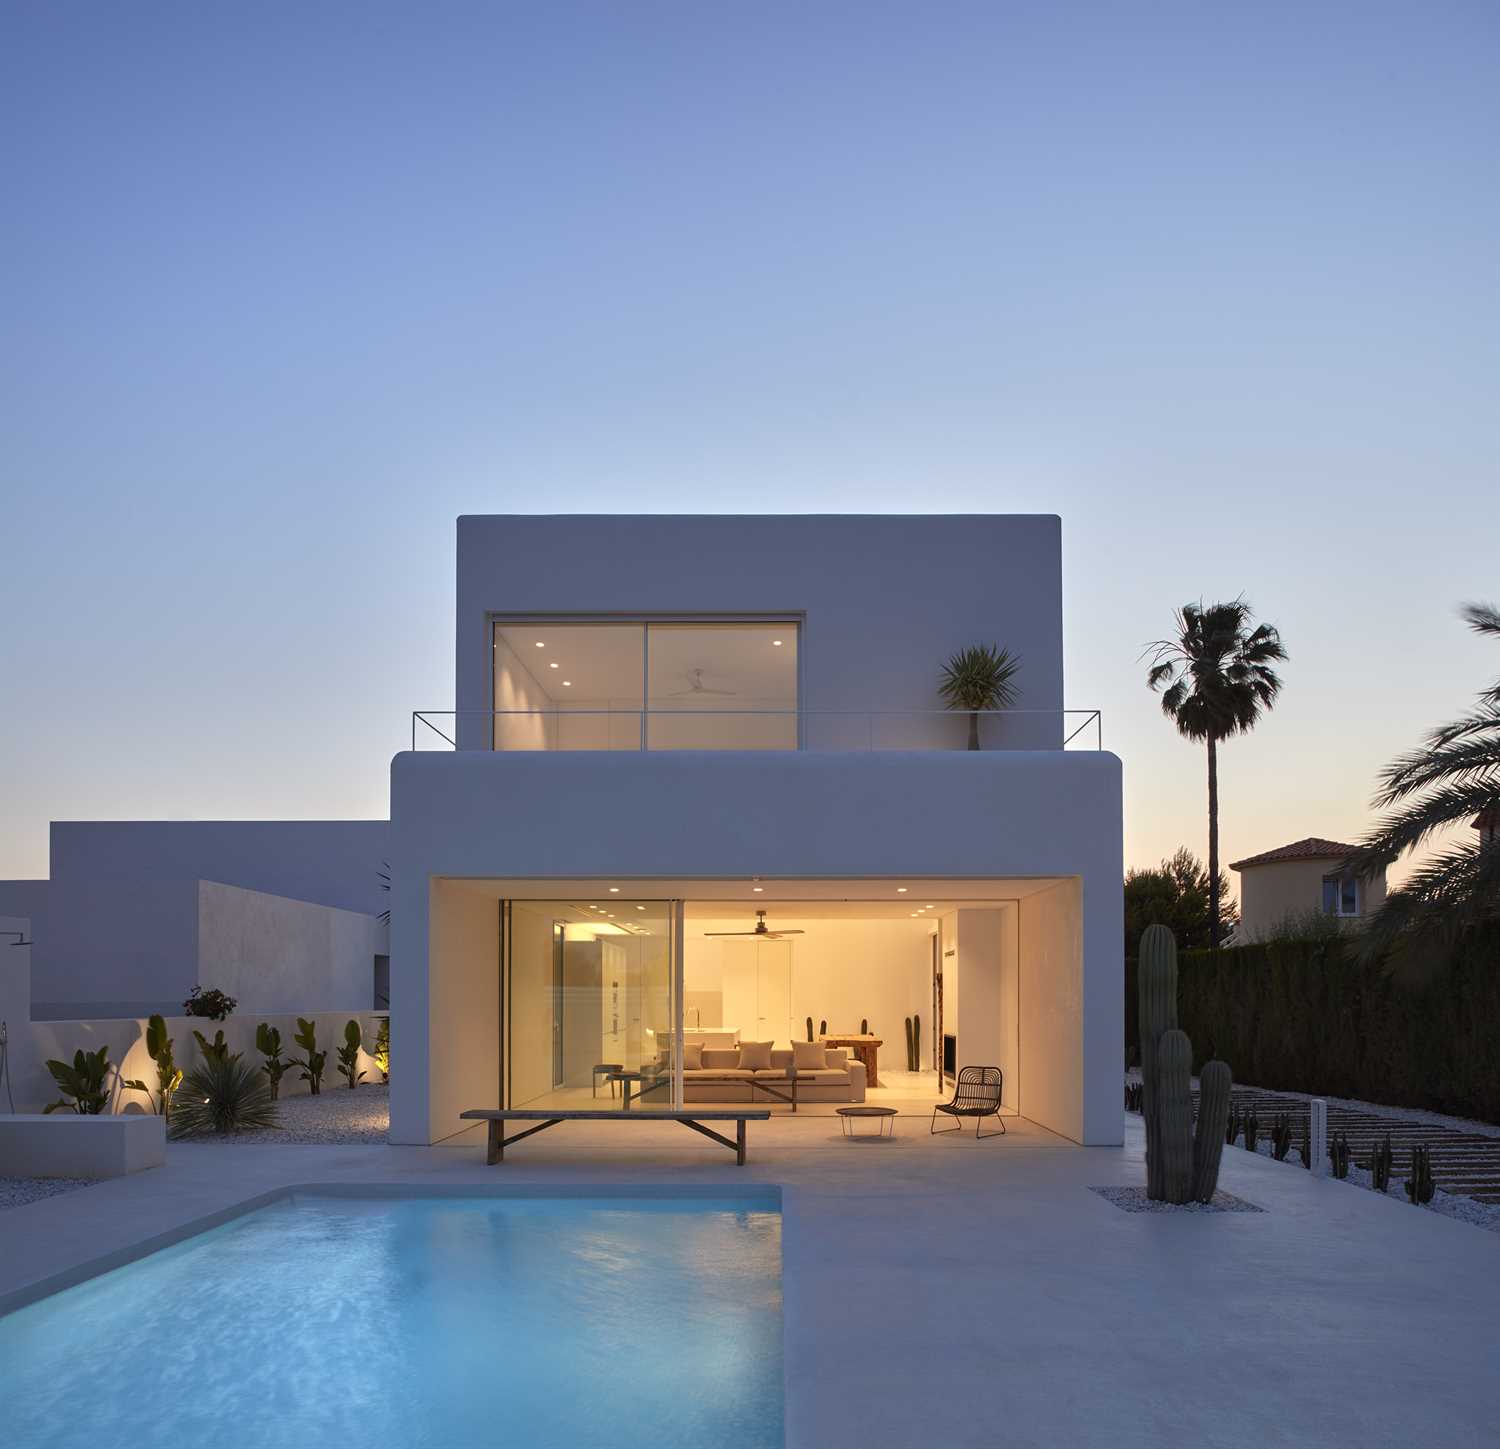 Microcemento blanco en fachada y piscina de vivienda moderna.